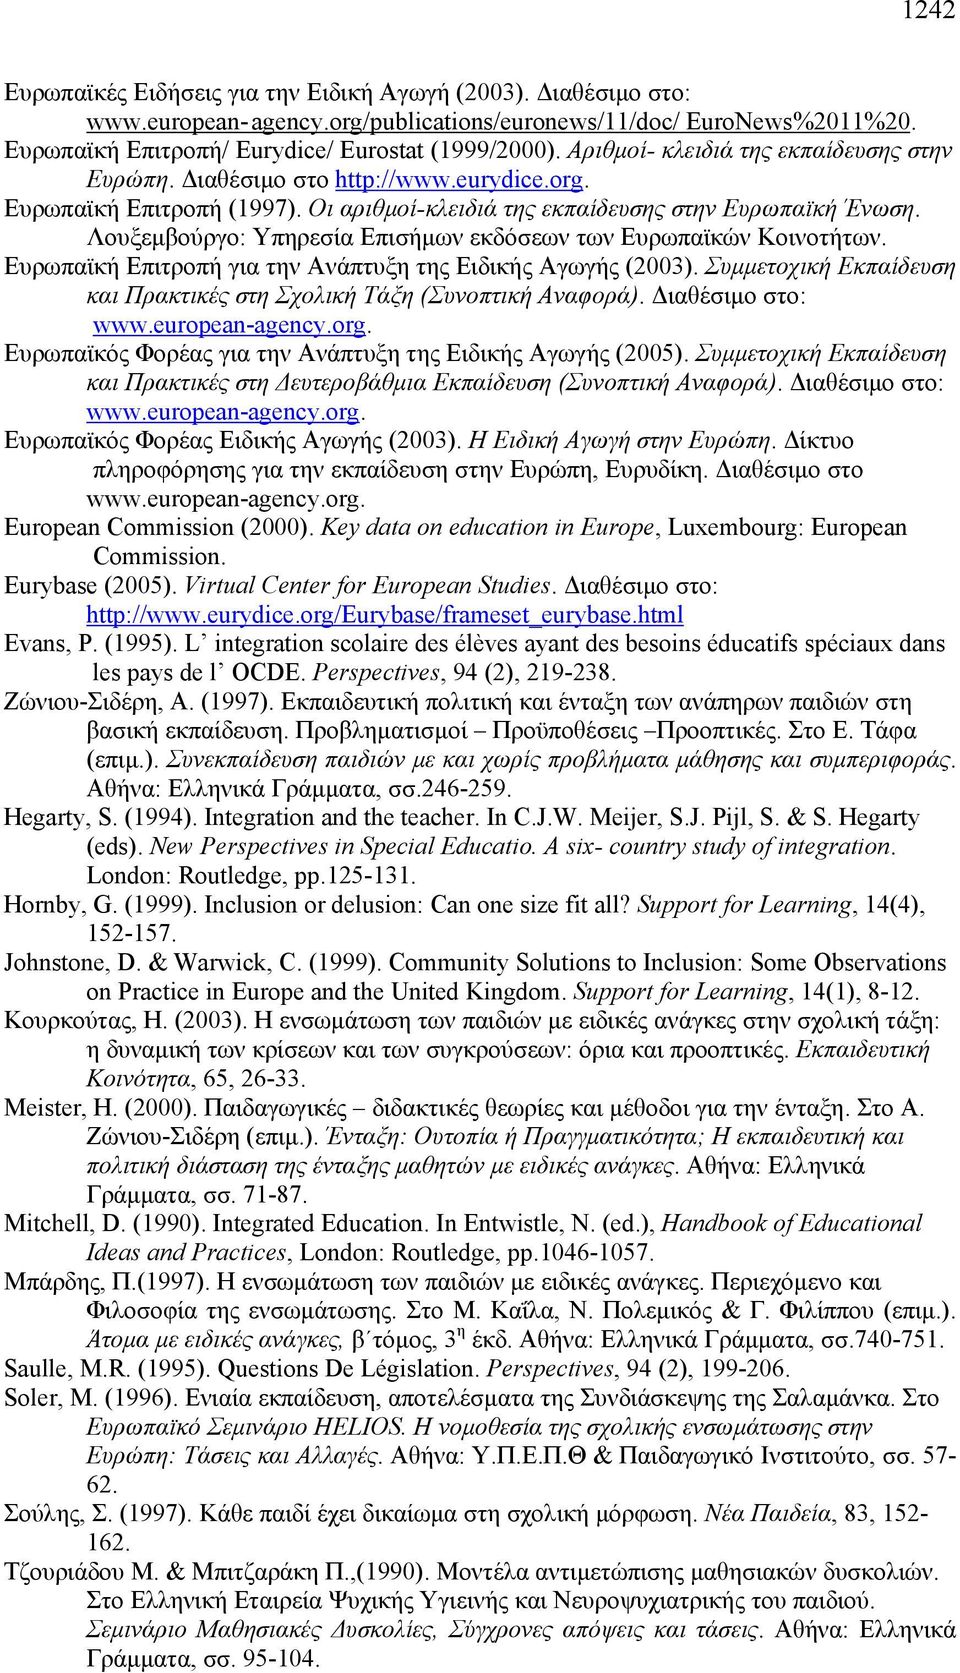 Λουξεμβούργο: Υπηρεσία Επισήμων εκδόσεων των Ευρωπαϊκών Κοινοτήτων. Ευρωπαϊκή Επιτροπή για την Ανάπτυξη της Ειδικής Αγωγής (2003).